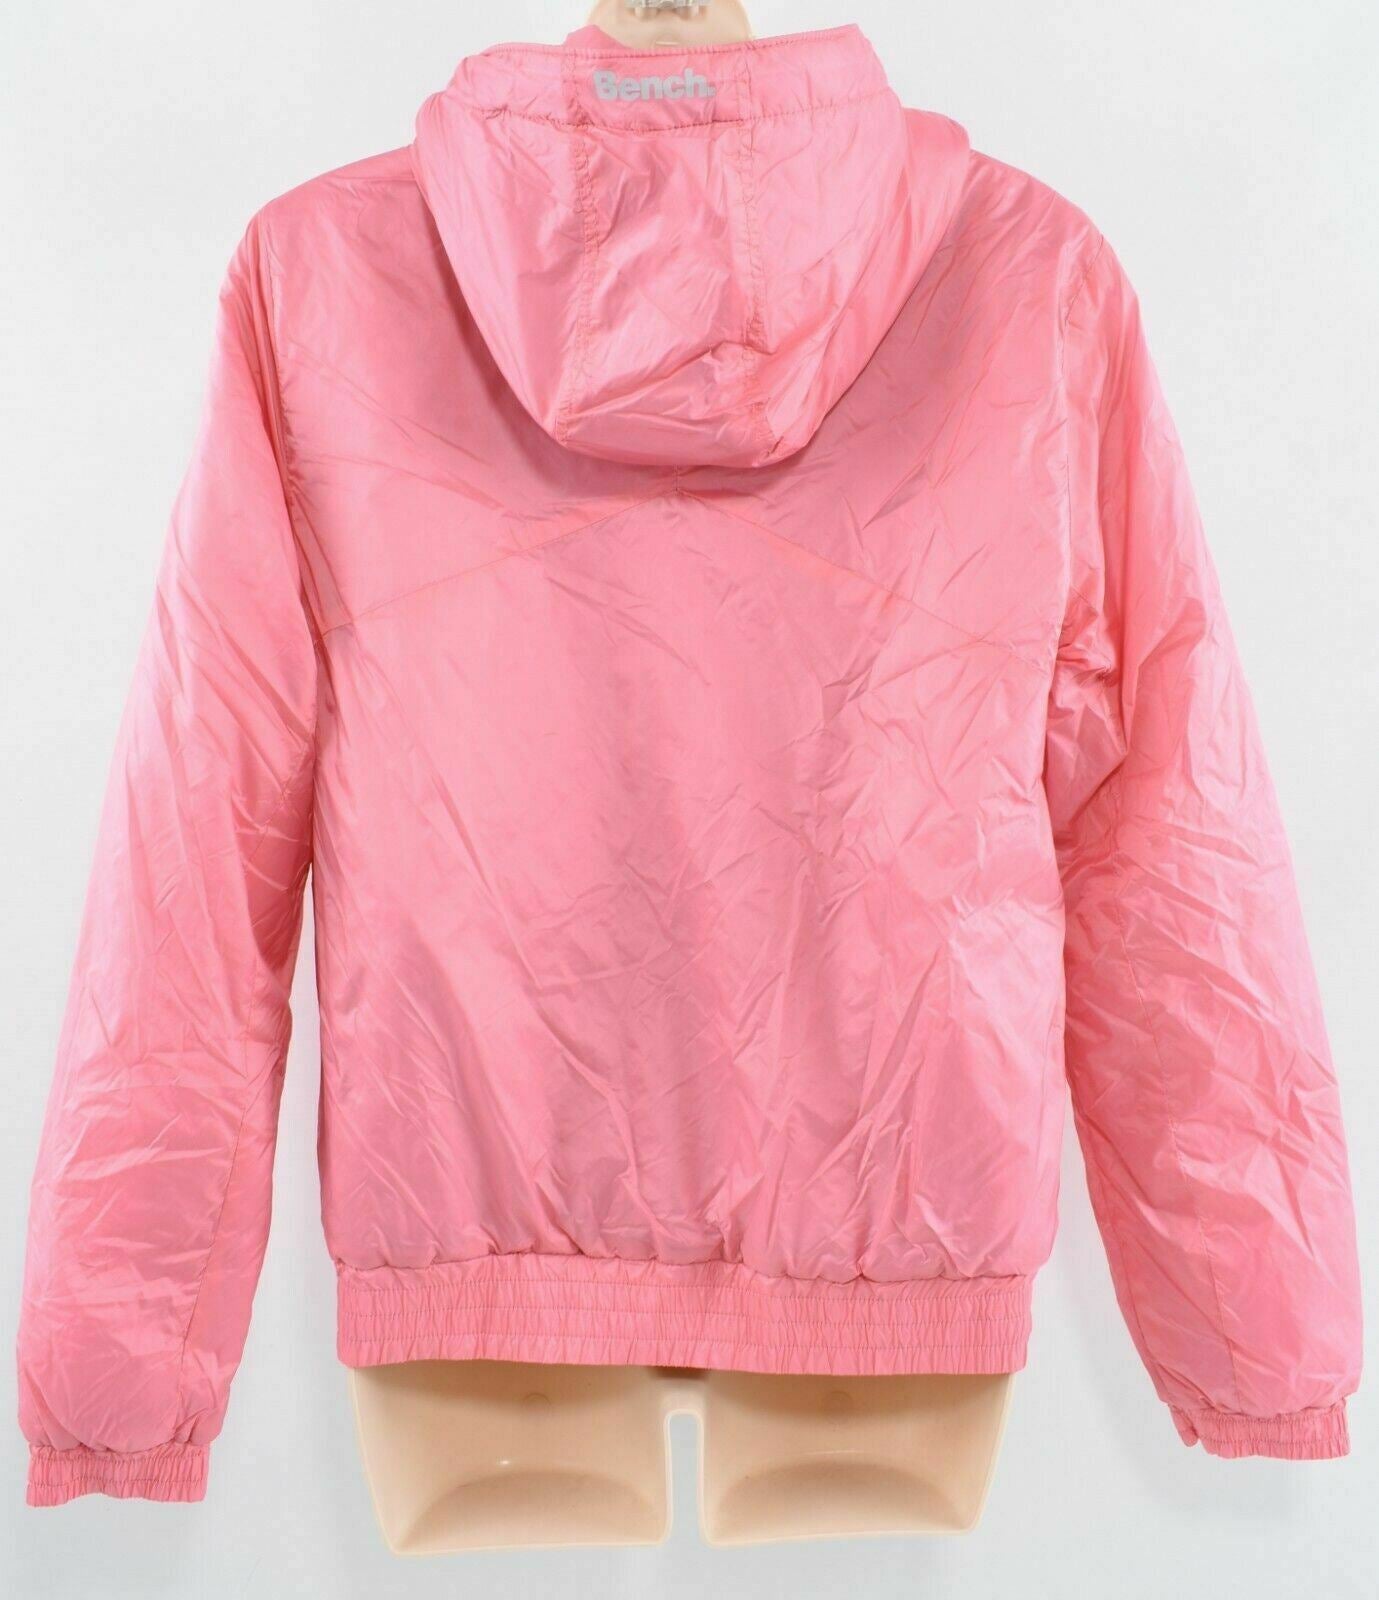 BENCH Women's Pink Hooded Windbreaker Jacket, size SMALL